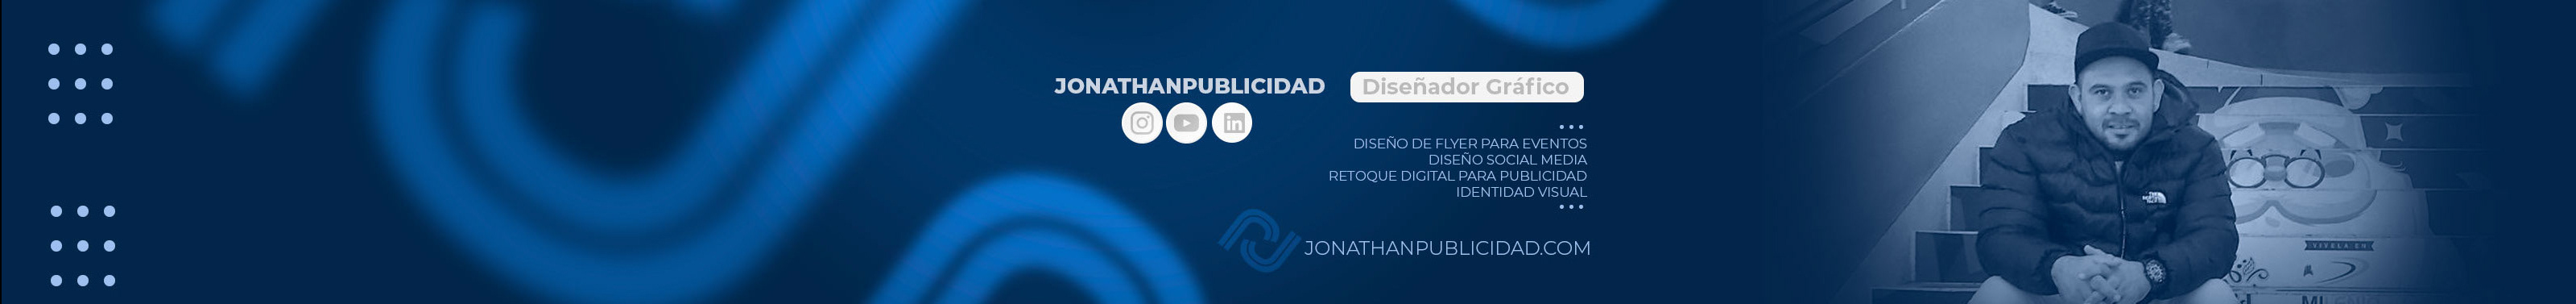 Jonathan Escalona profil başlığı